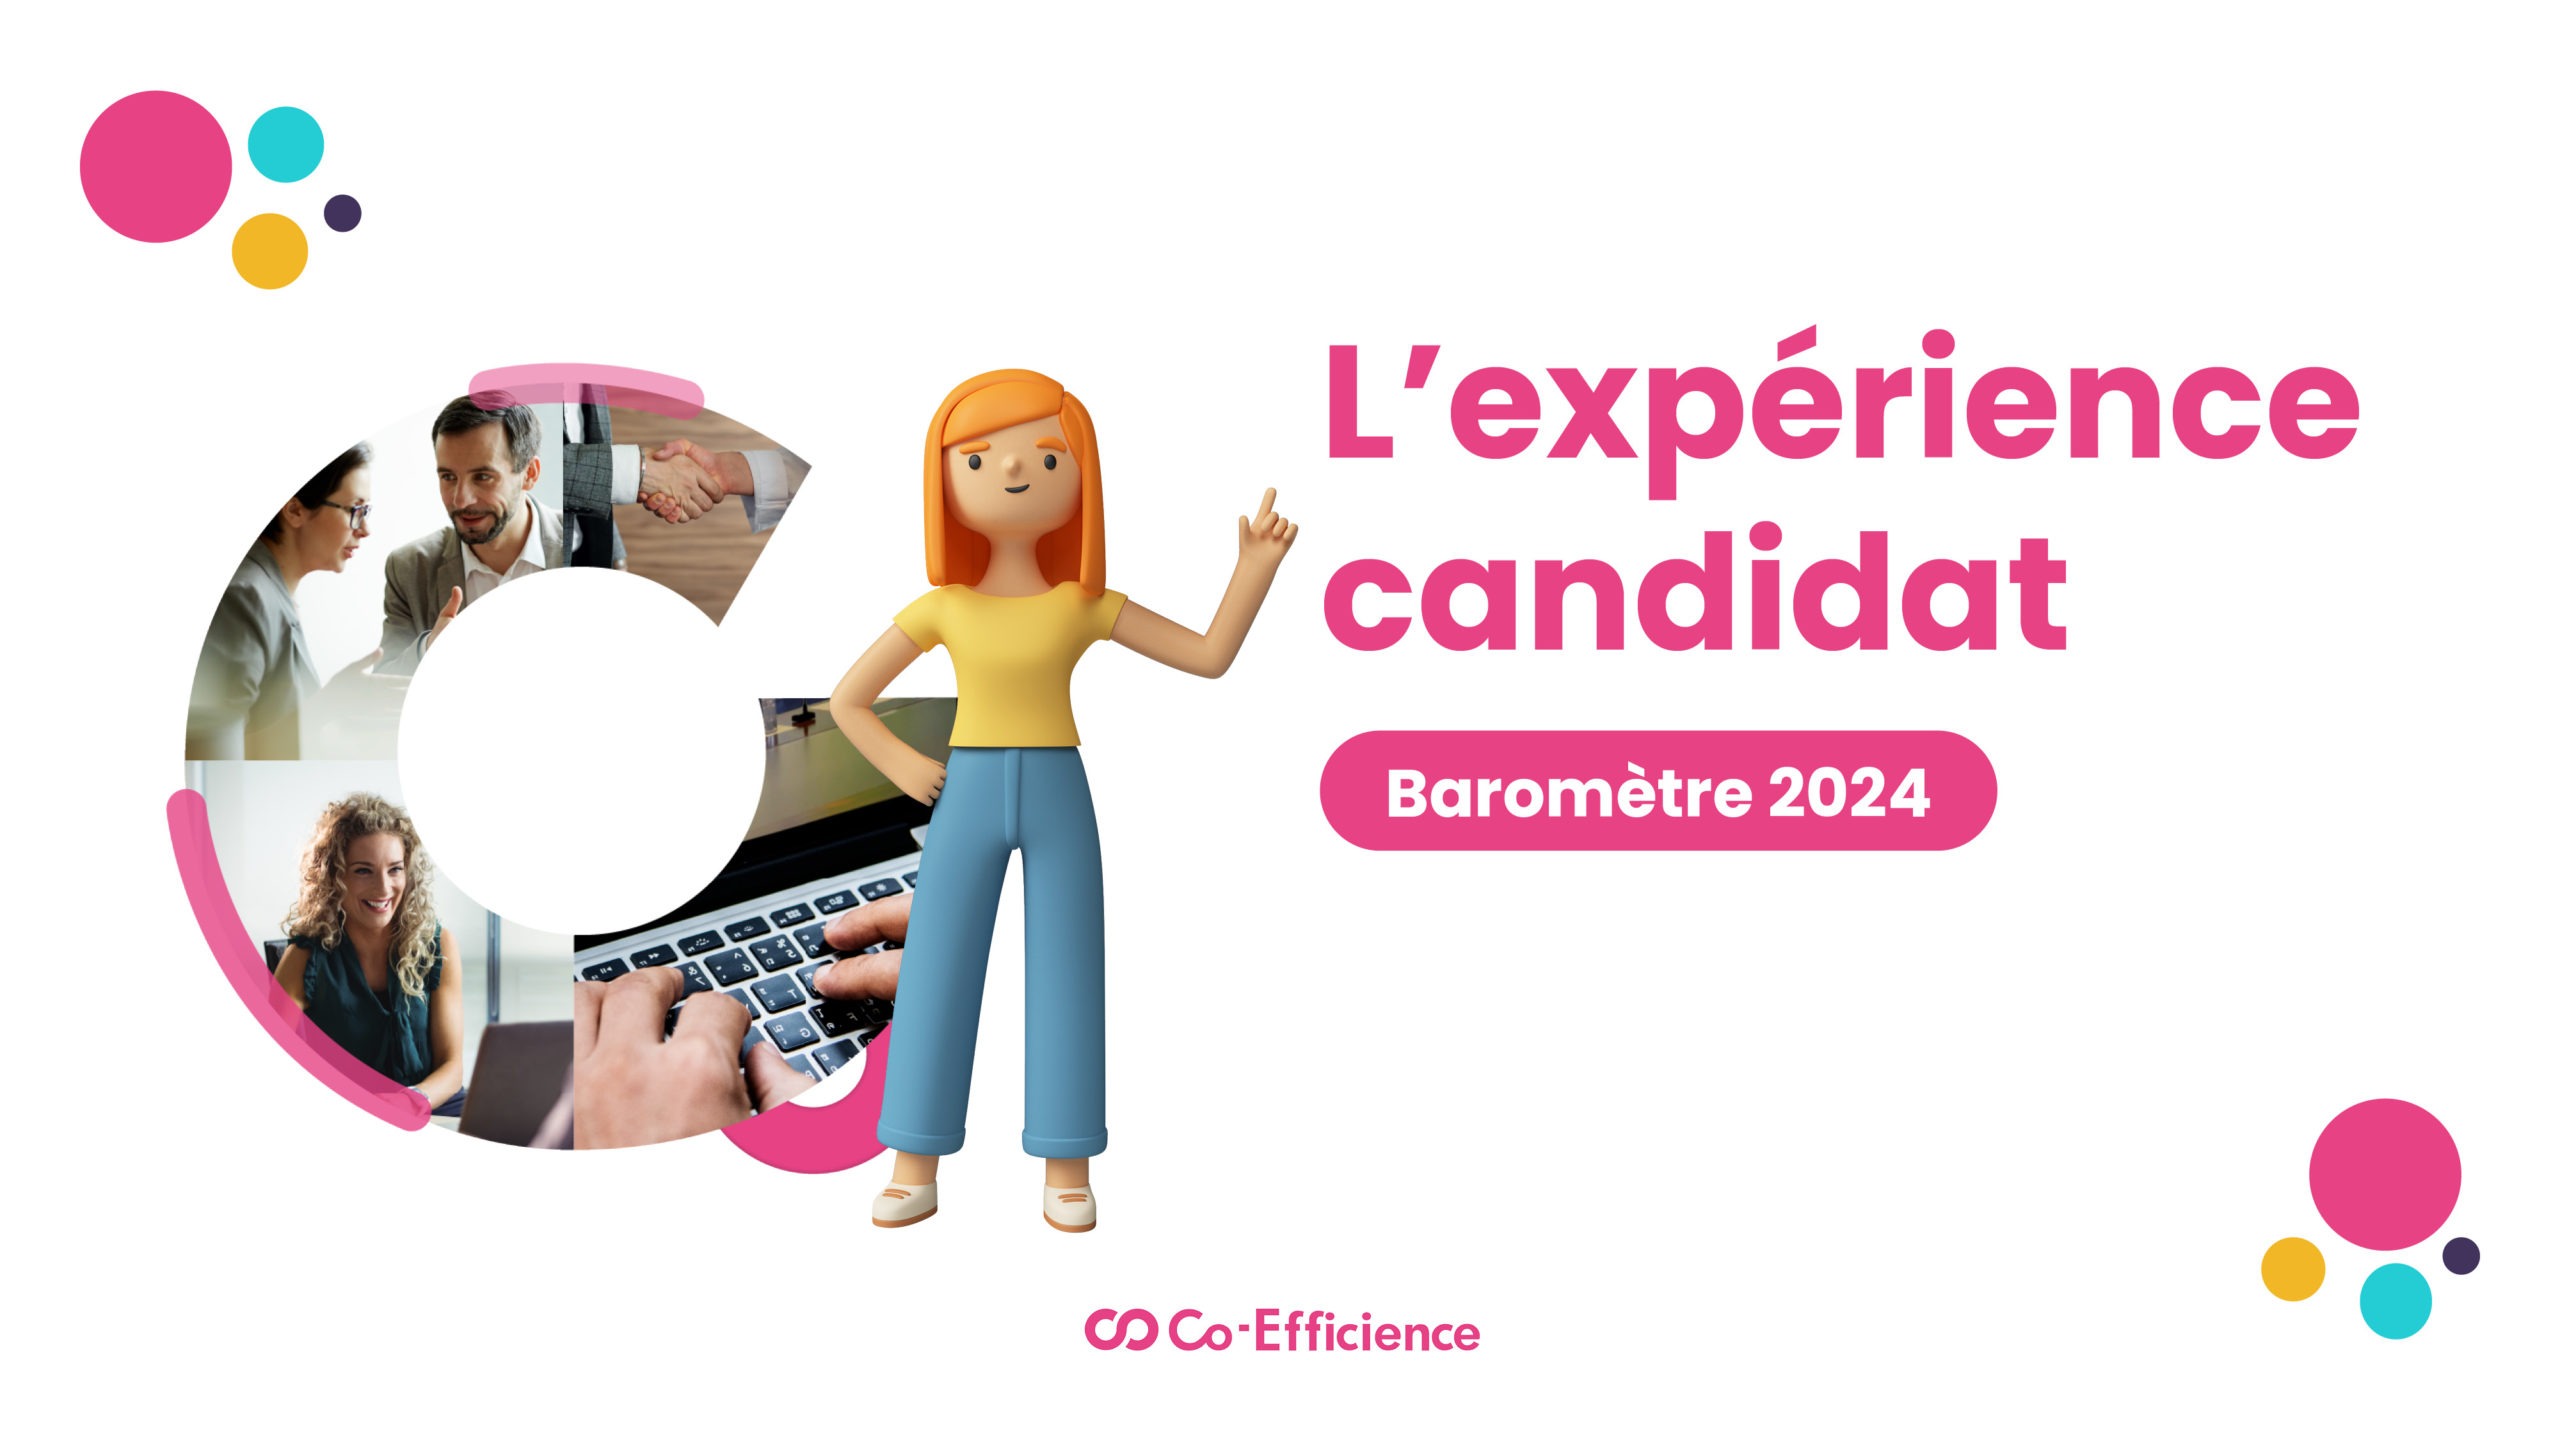 Baromètre 2024 : on vous dit tout sur l’expérience candidat  !